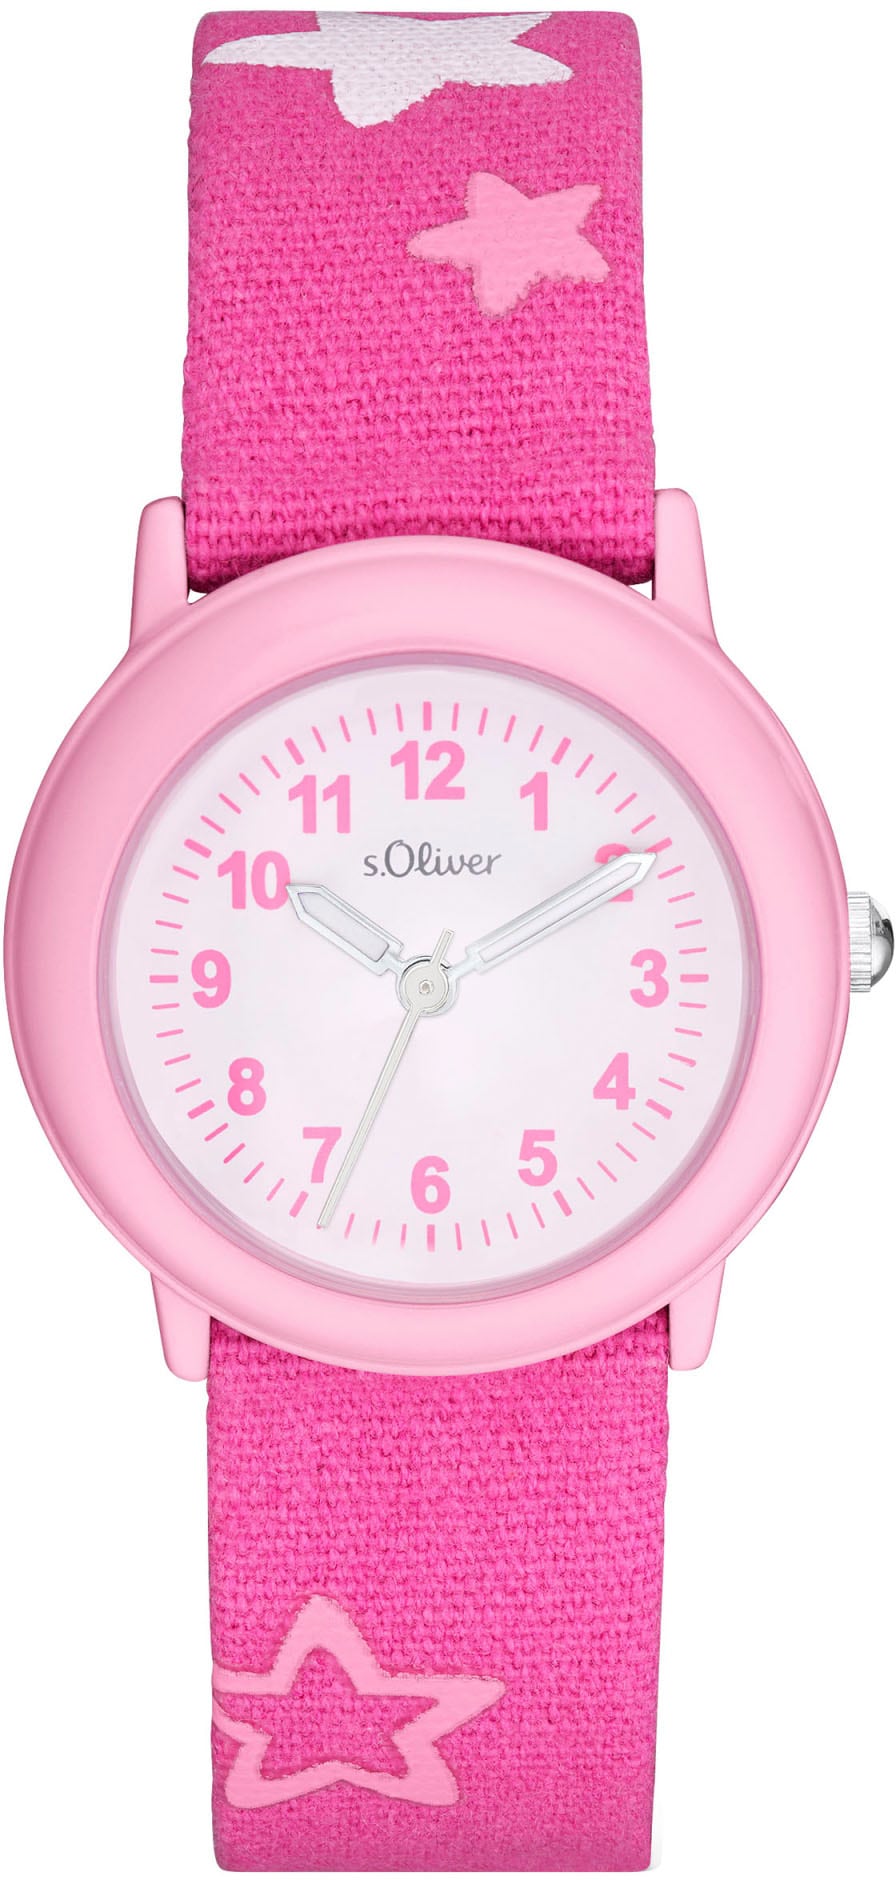 s.Oliver Quarzuhr »2036751«, Armbanduhr, Kinderuhr, ideal auch als Geschenk